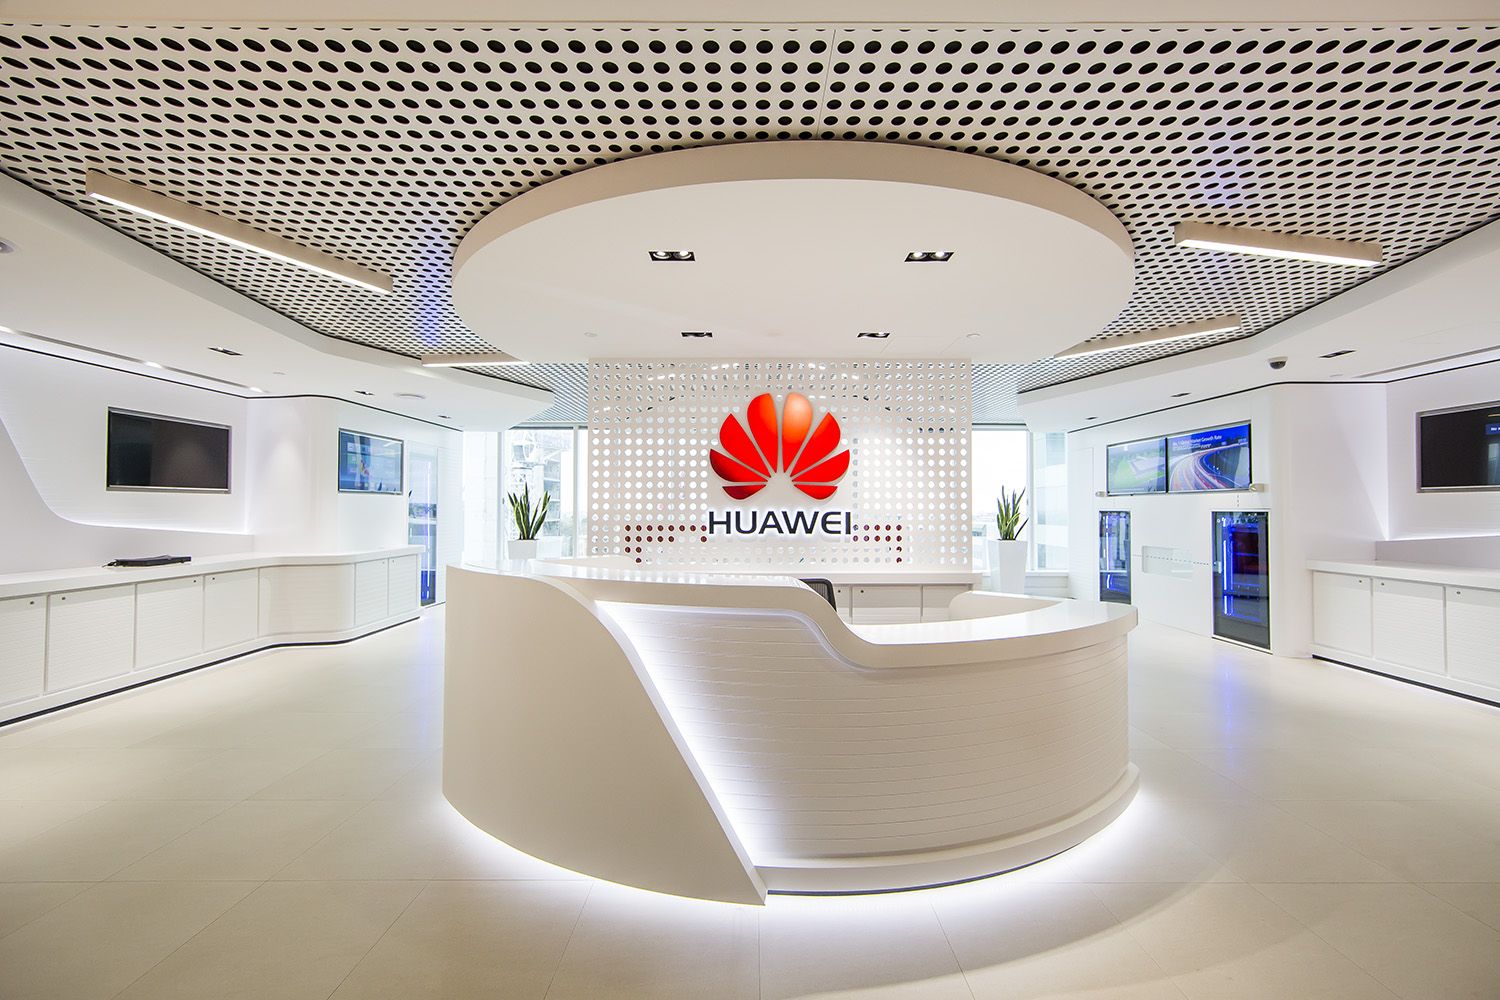 Huawei передаст лицензии на производство другим компаниям, чтобы обойти американские санкции